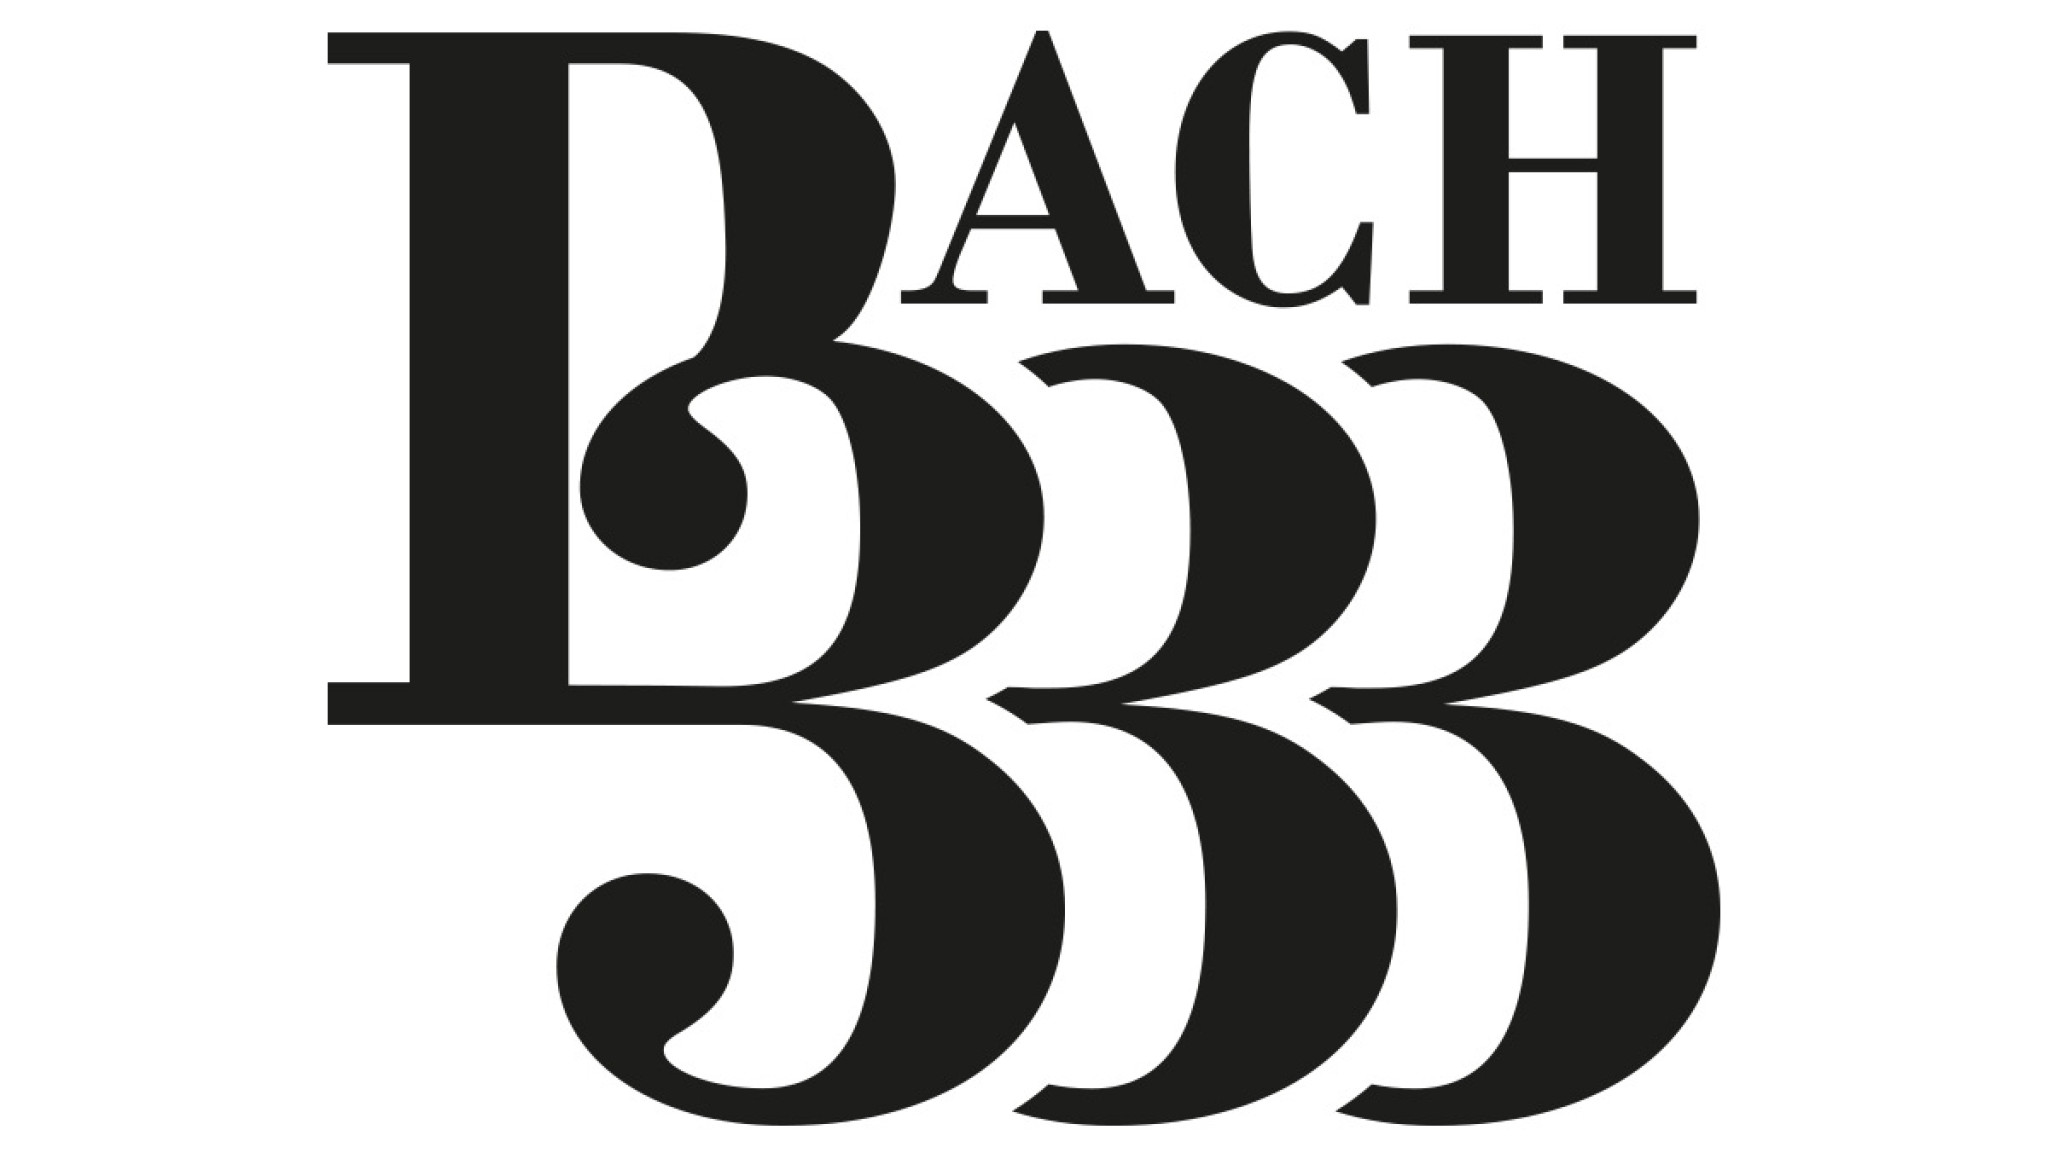 "Bach 333" digital